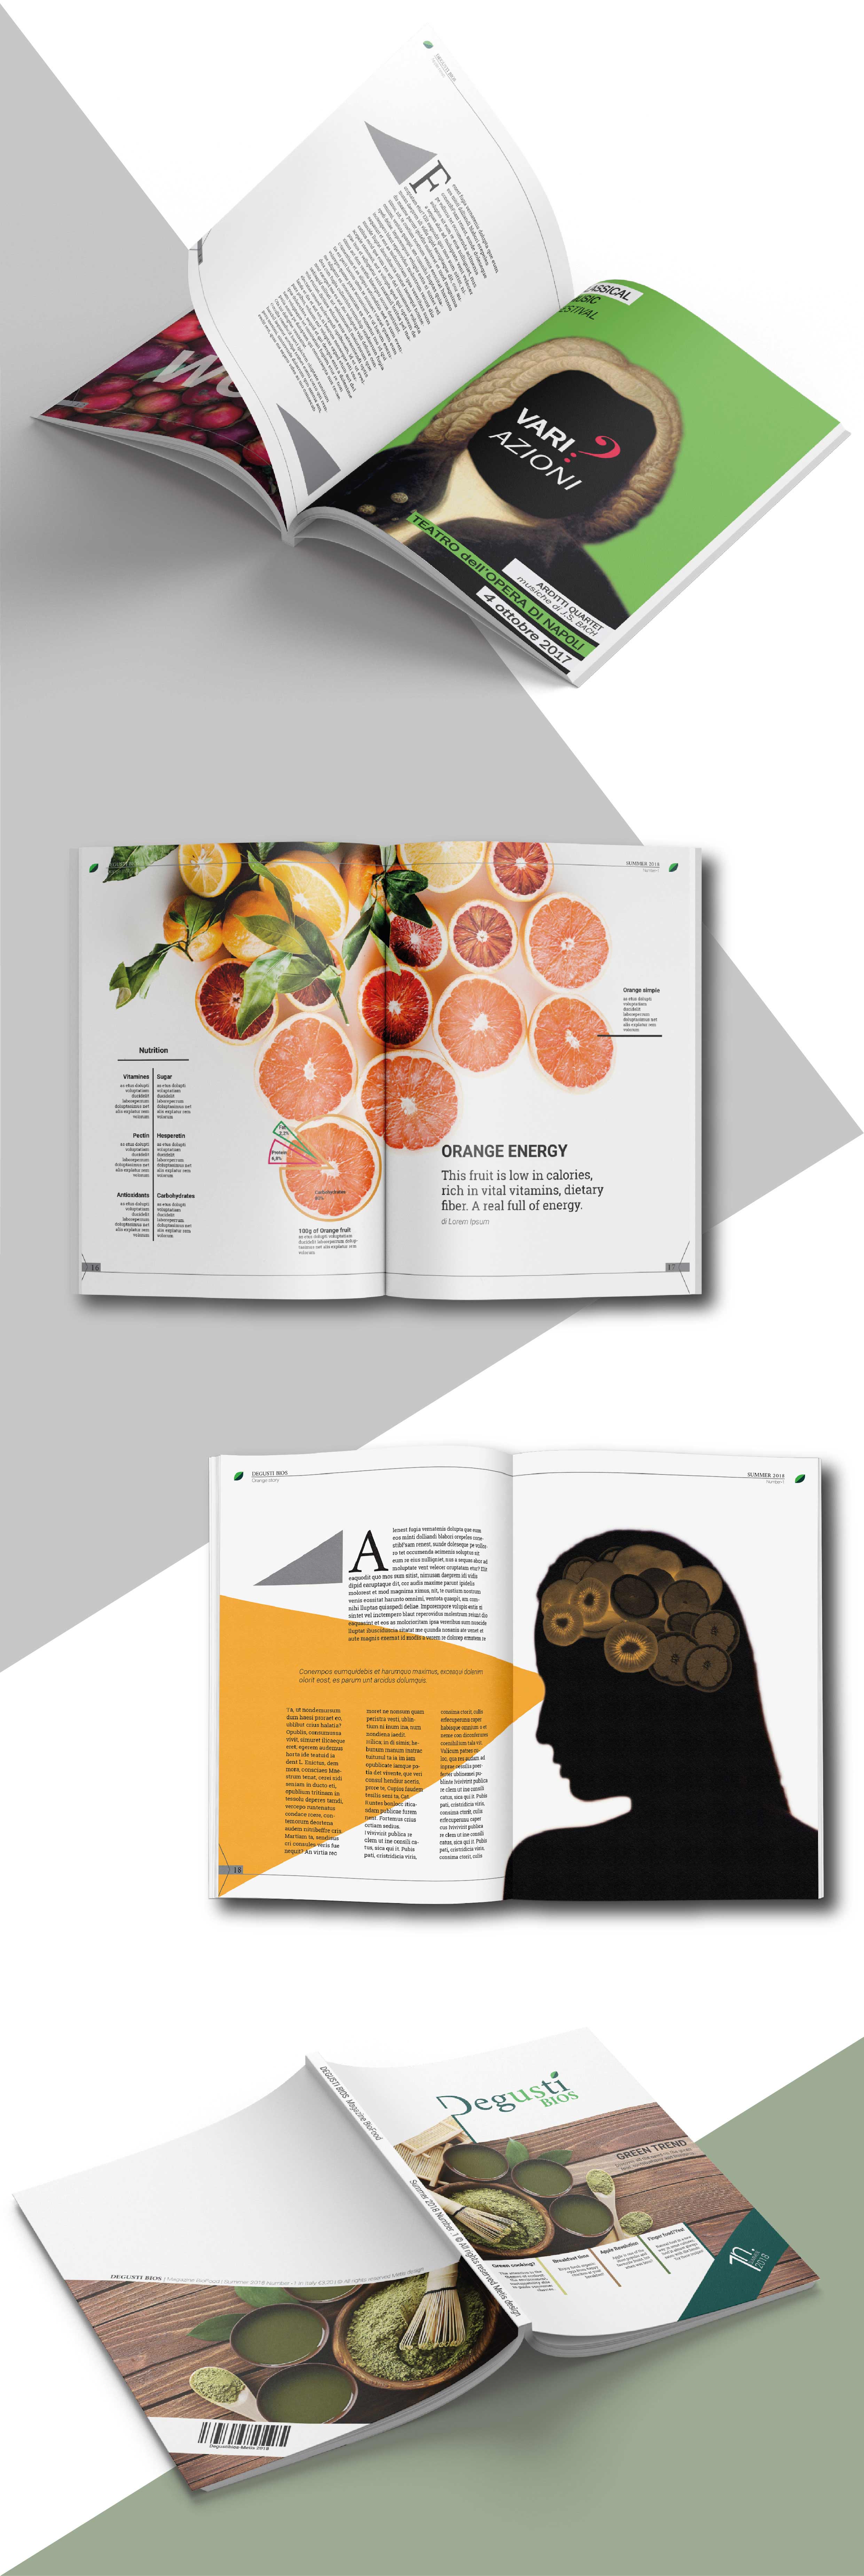 presentazione-magazine Degusti Bios5